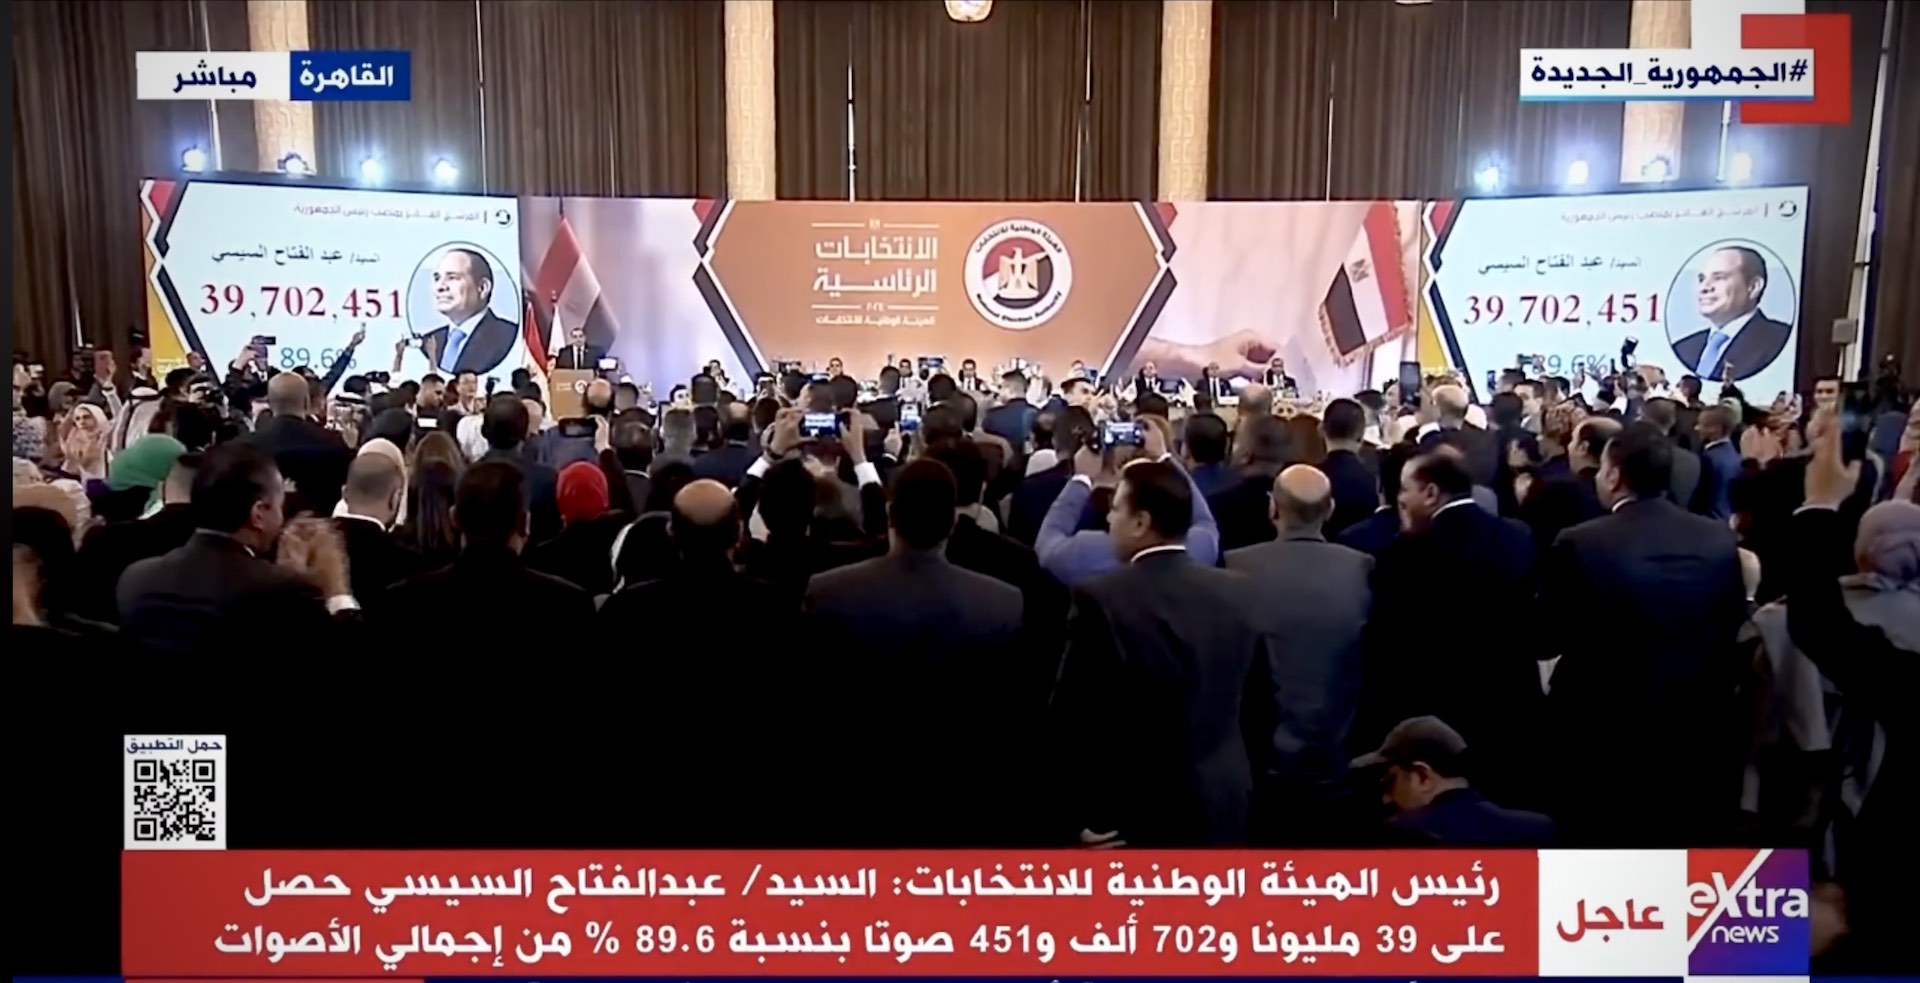 الرئيس عبد الفتاح السيسي يفوز ب 89,6 في المائة من الأصوات في الانتخابات الرئاسية المصرية وفرحة كبيرة في مصر والعالم العربي